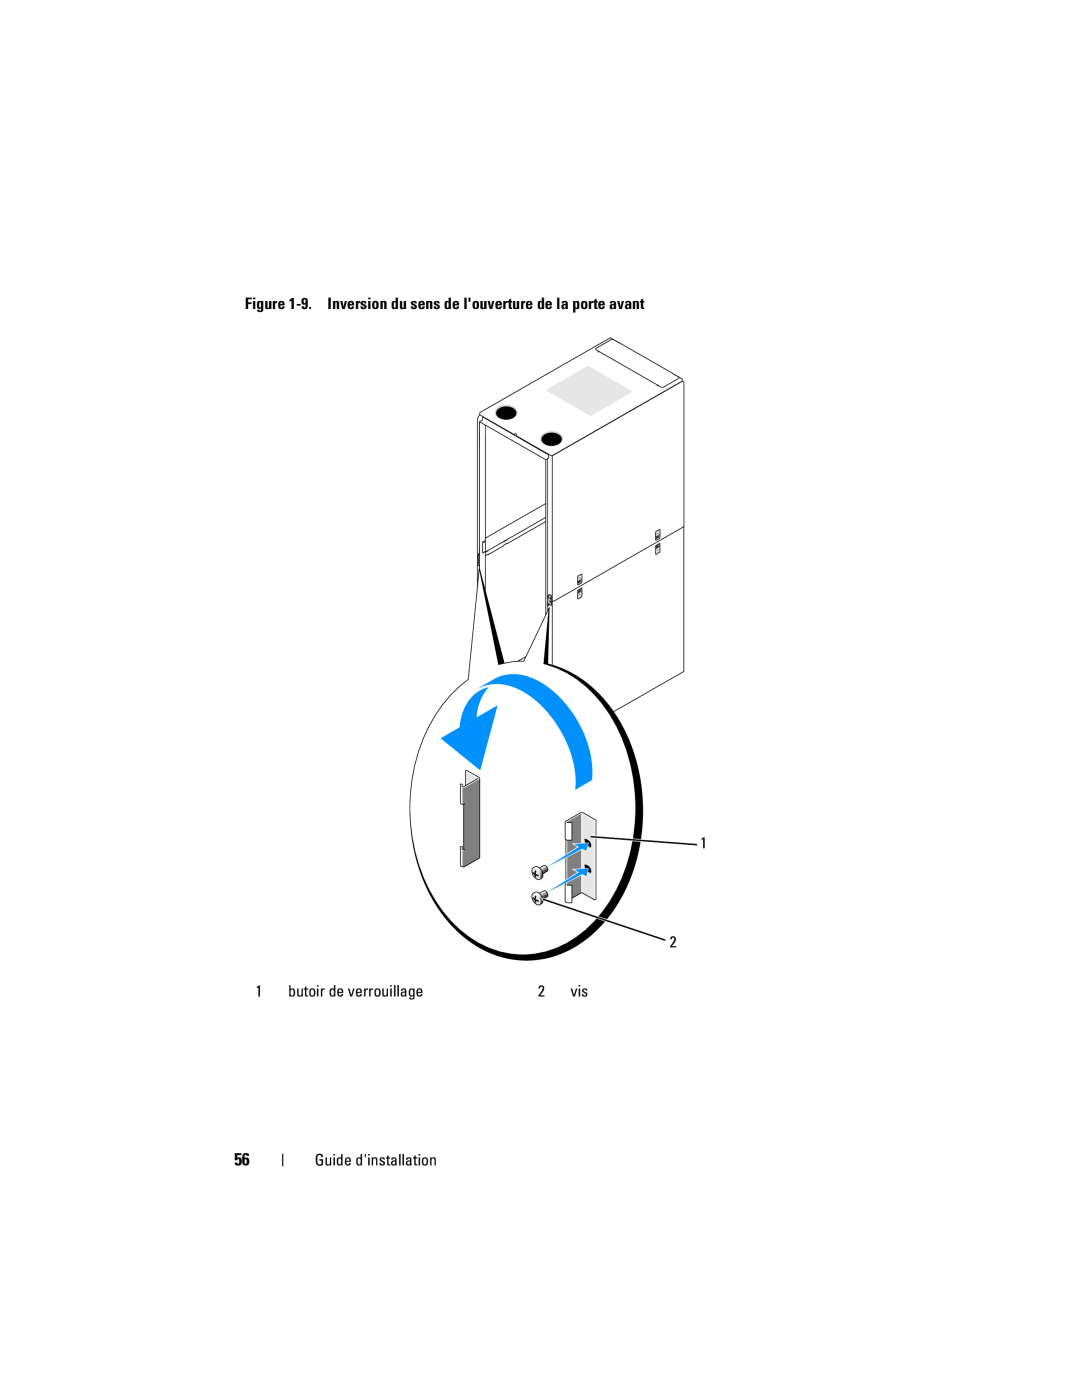 Dell 4220 manual 9. Inversion du sens de louverture de la porte avant, butoir de verrouillage, Guide dinstallation 